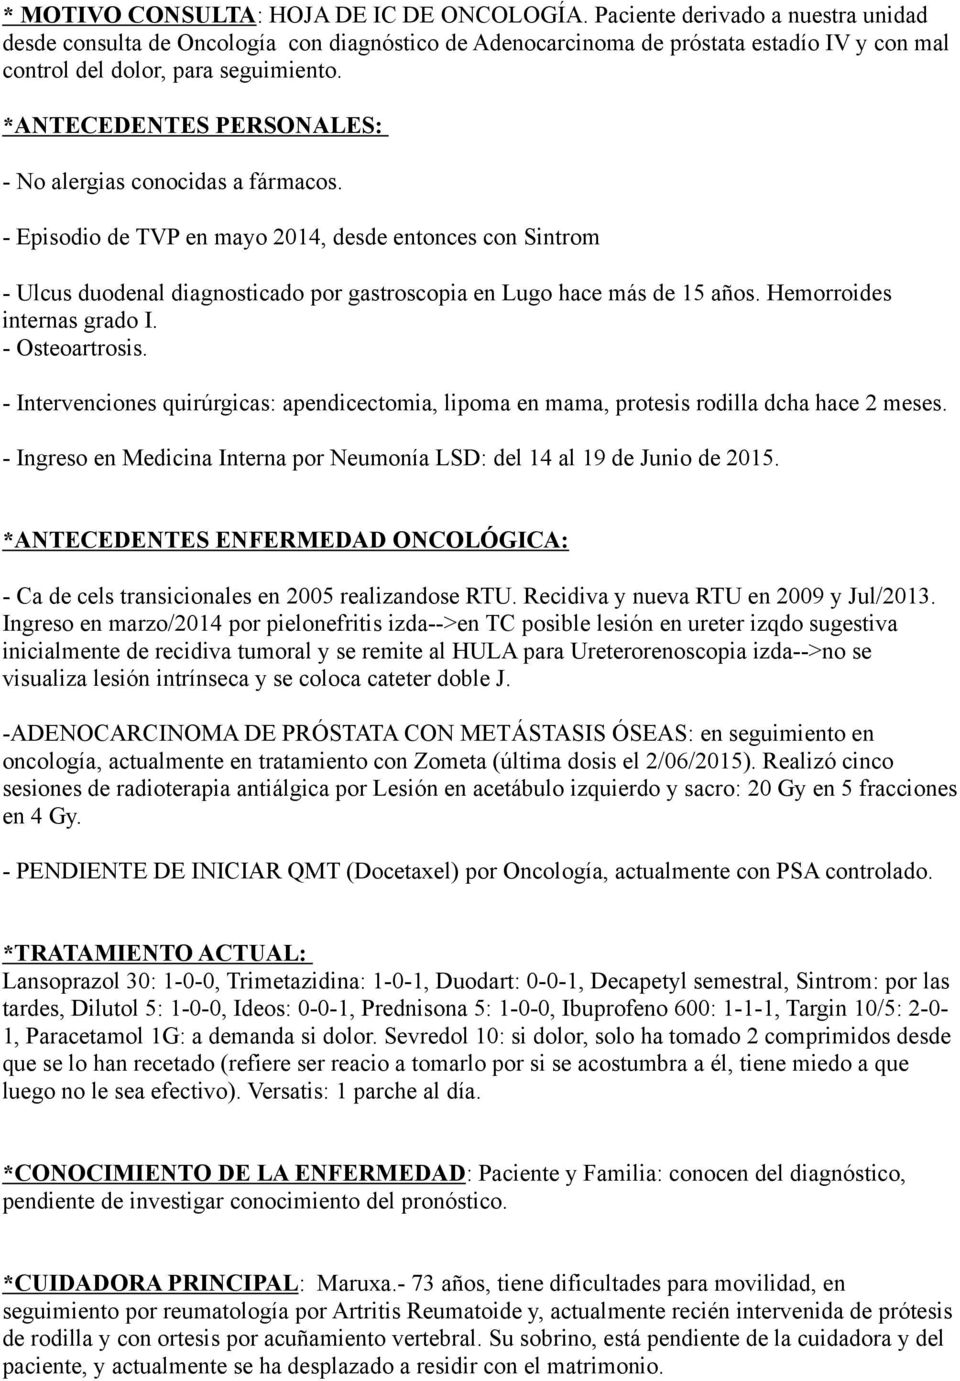 *ANTECEDENTES PERSONALES: - No alergias conocidas a fármacos. - Episodio de TVP en mayo 2014, desde entonces con Sintrom - Ulcus duodenal diagnosticado por gastroscopia en Lugo hace más de 15 años.